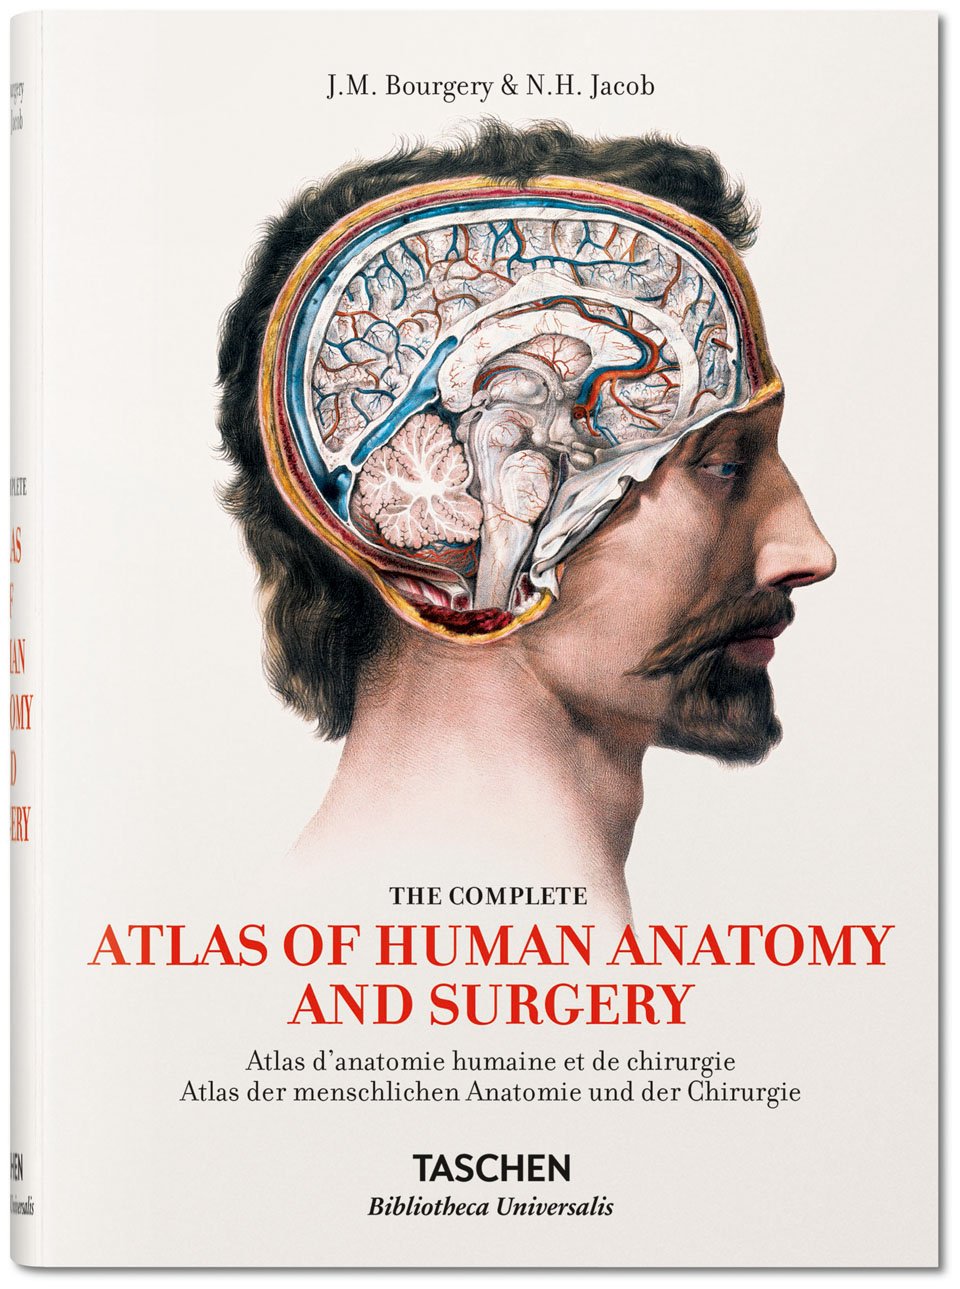 Atlas der menschlichen Anatomie und der Chirurgie | J.M. Bourgery & N.H. Jacob | Taschen Verlag